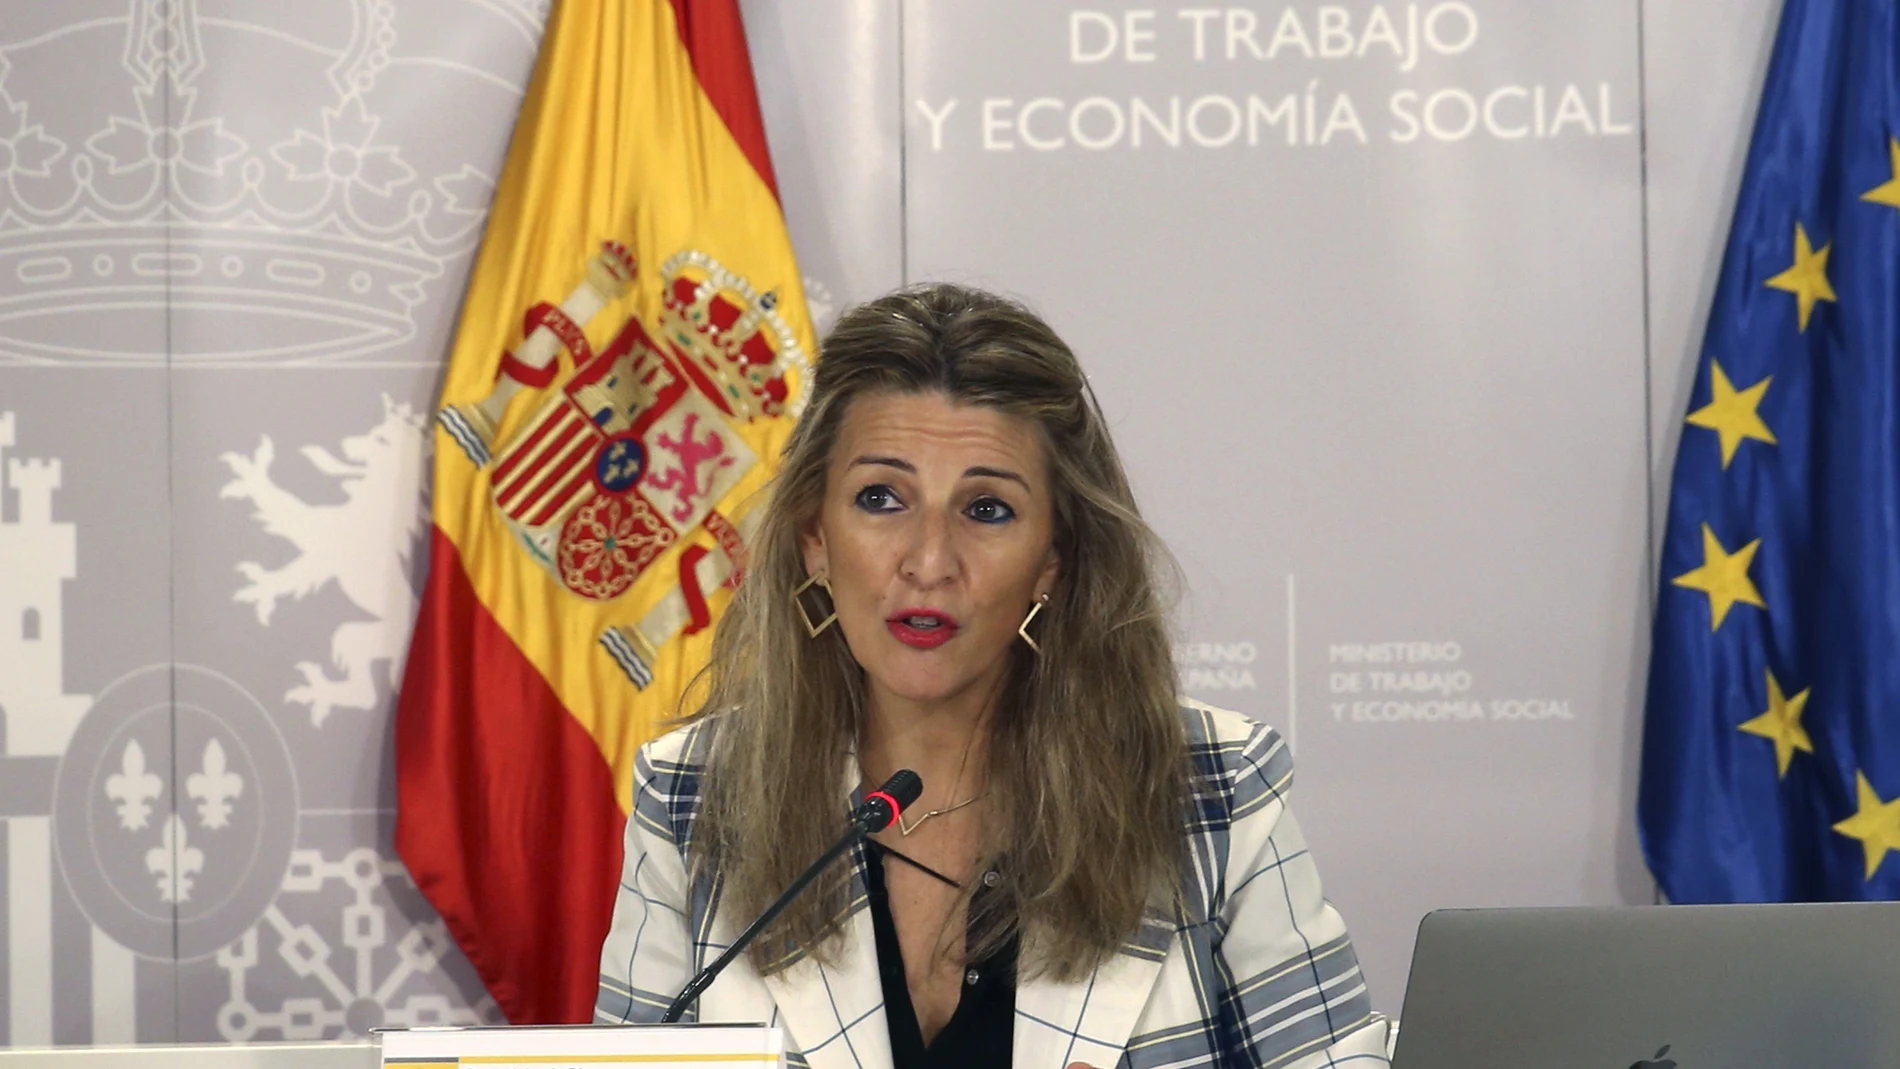 La ministra de Trabajo y Economía Social, Yolanda Díaz, se ha reunido con los responsables laborales de las comunidades autónomas para abordar el futuro de las Políticas Activas de Empleo (PAE).